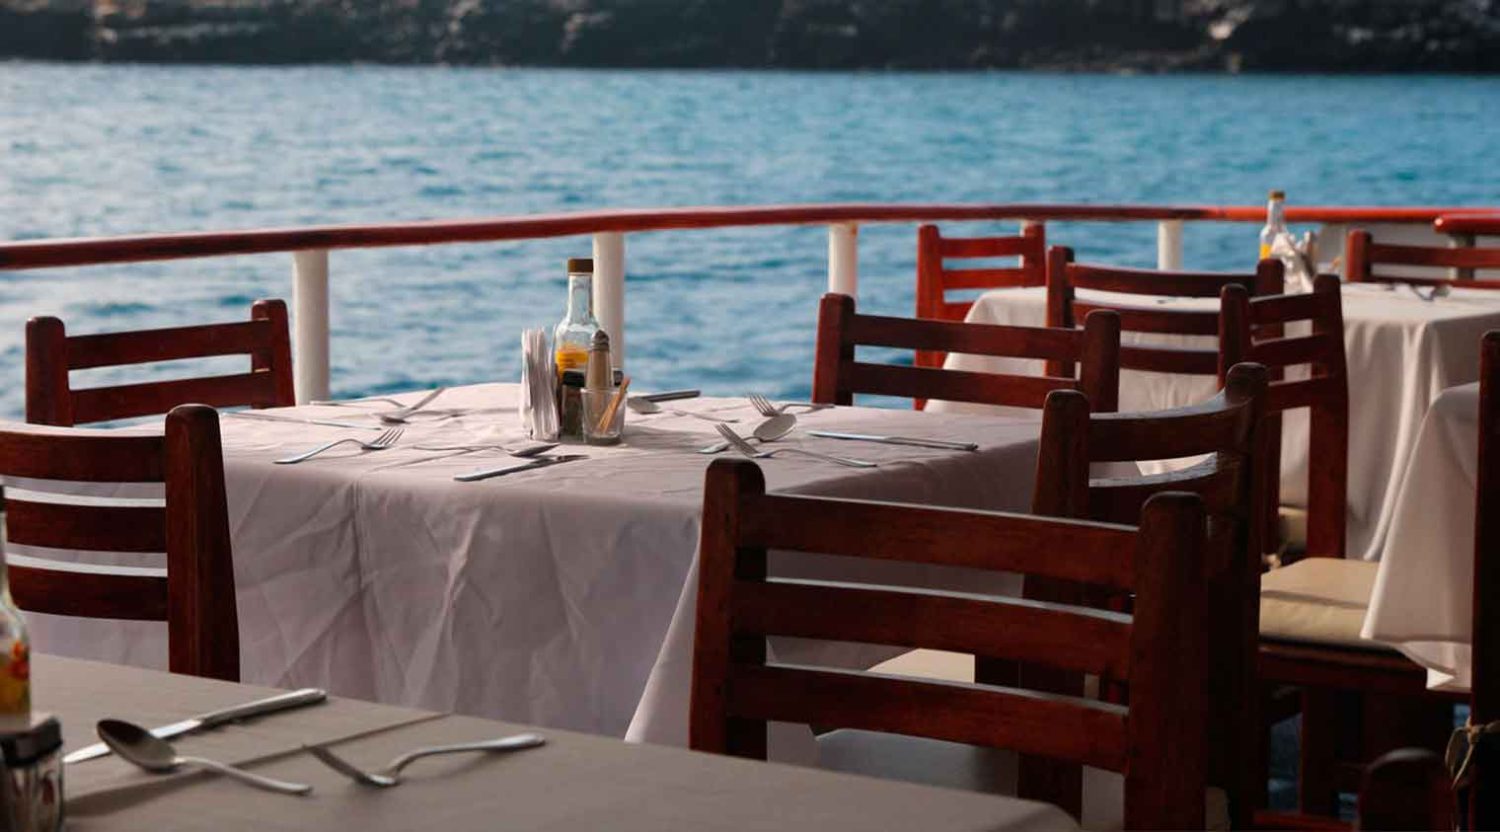 millenium catamaran yacht outdoor dining room of galapagos islands tours